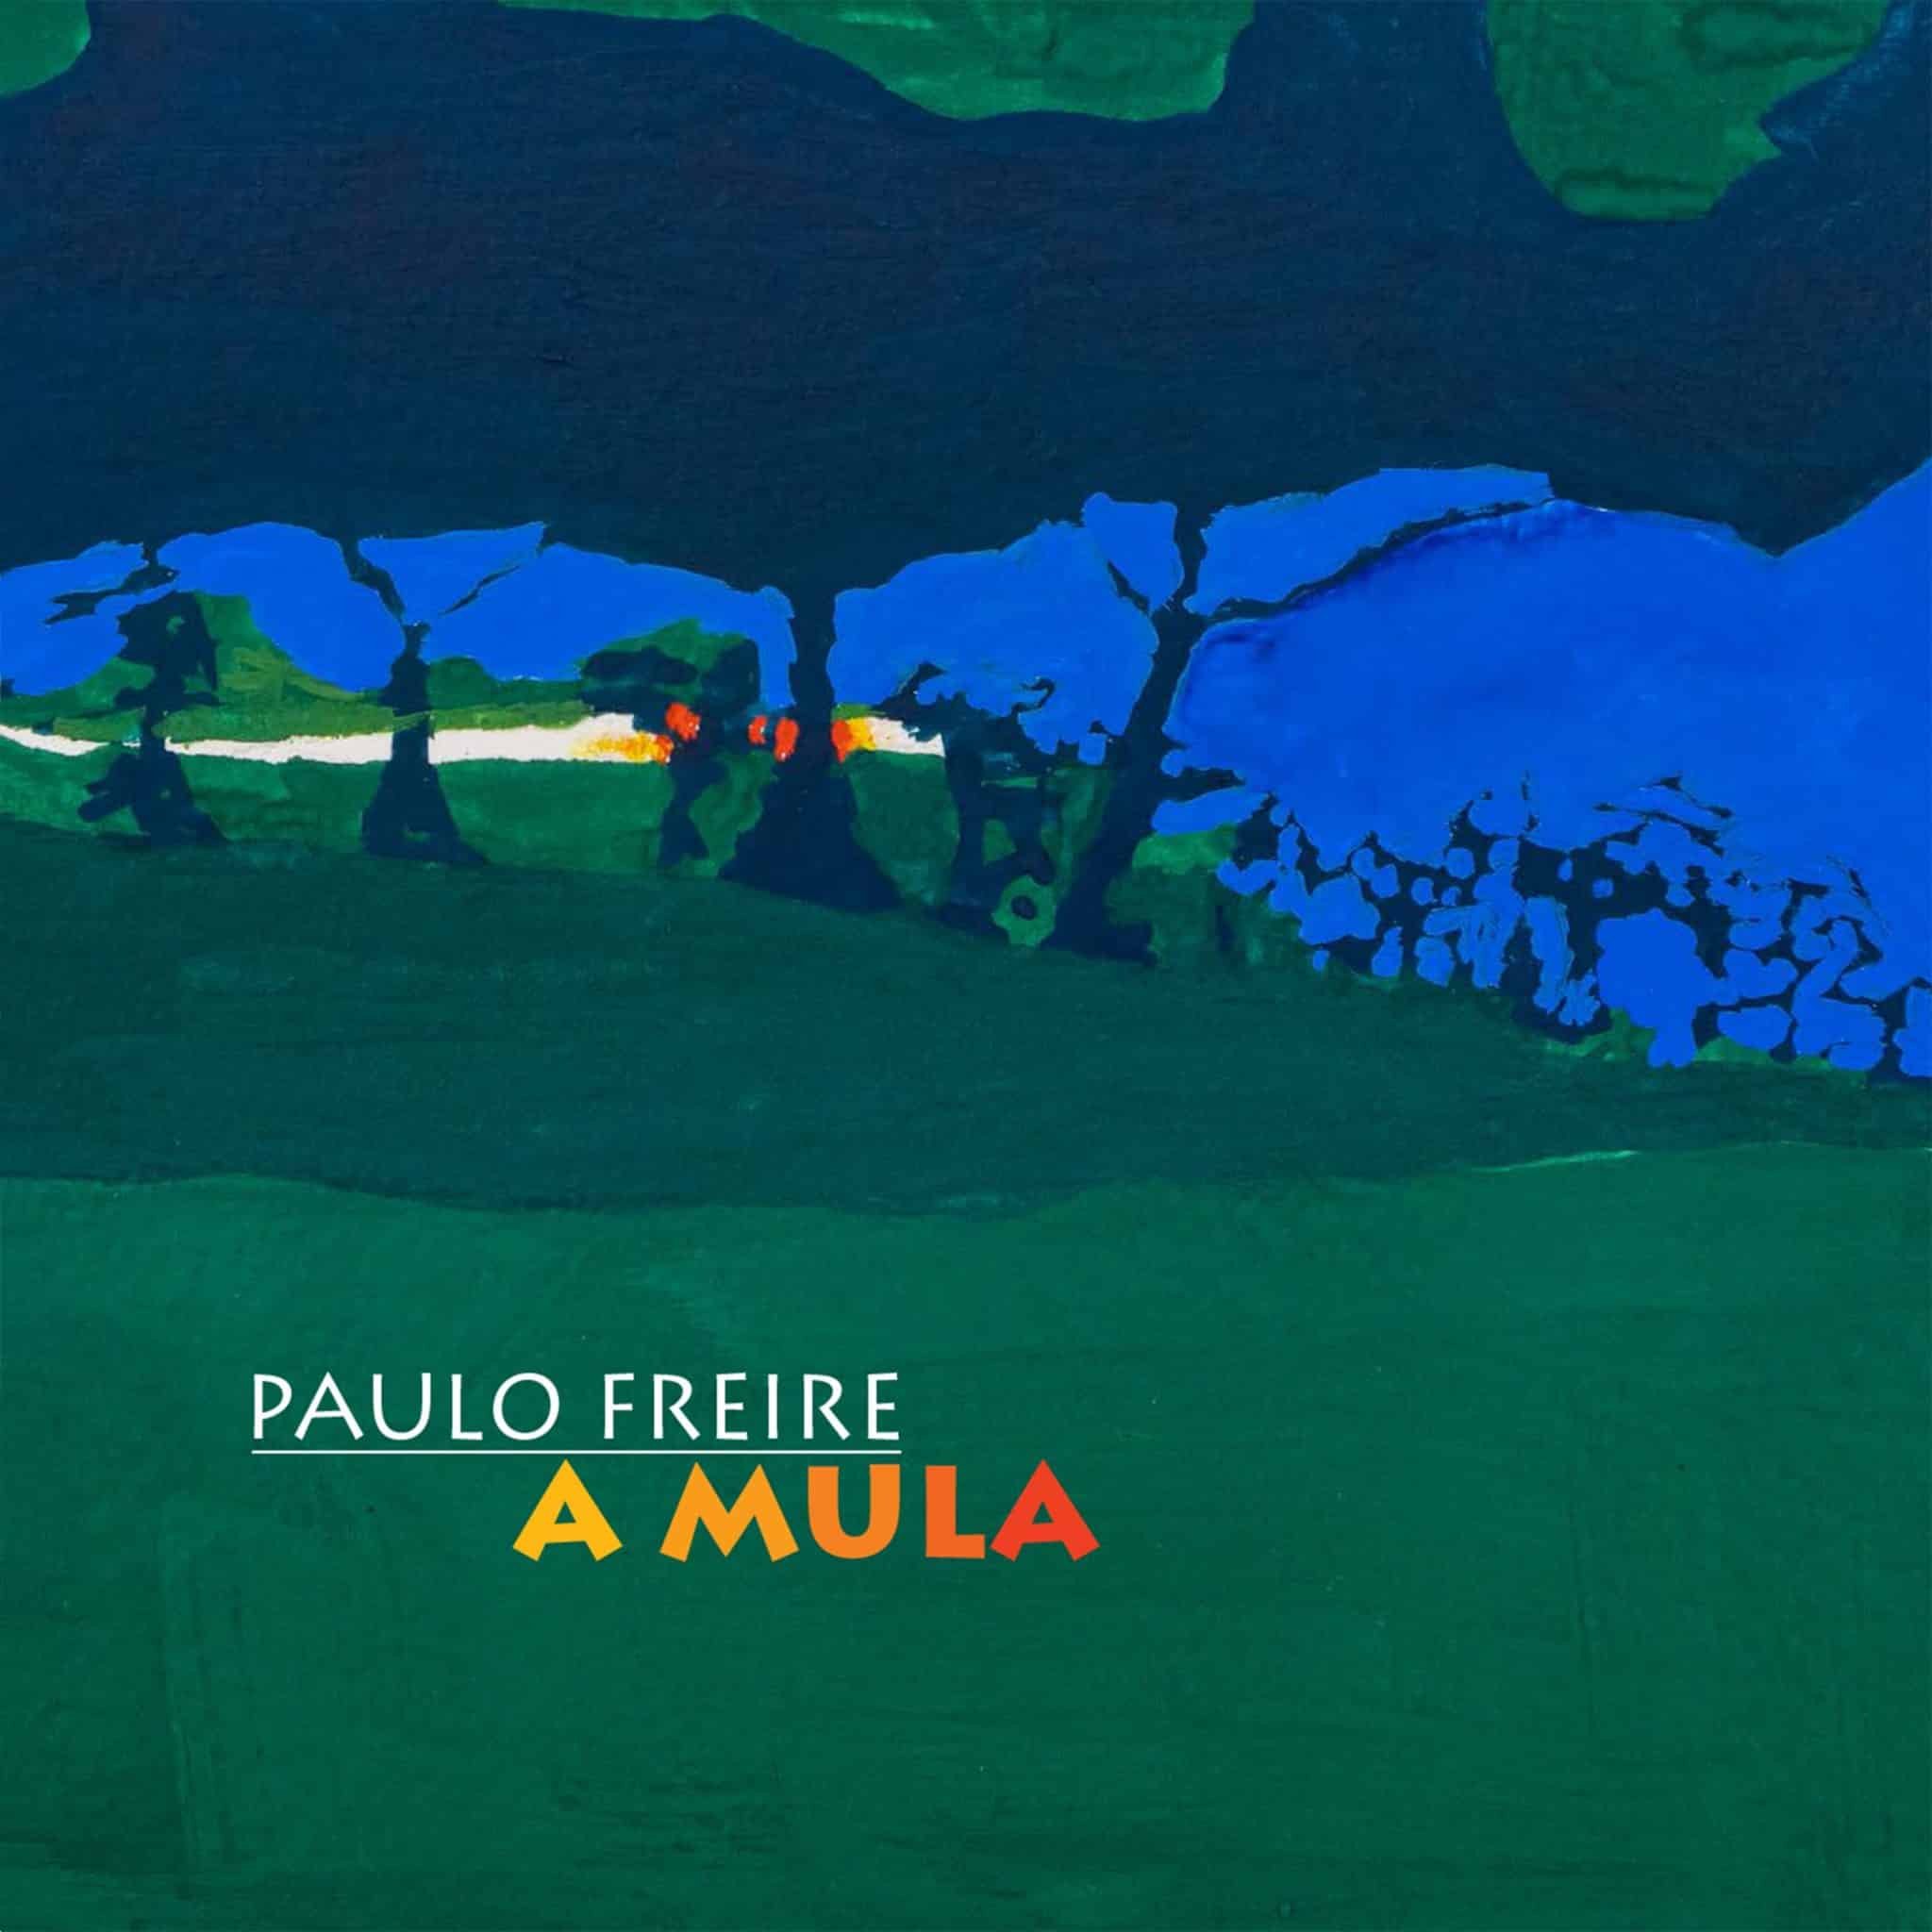 revistaprosaversoearte.com - Paulo Freire lança álbum 'A Mula'